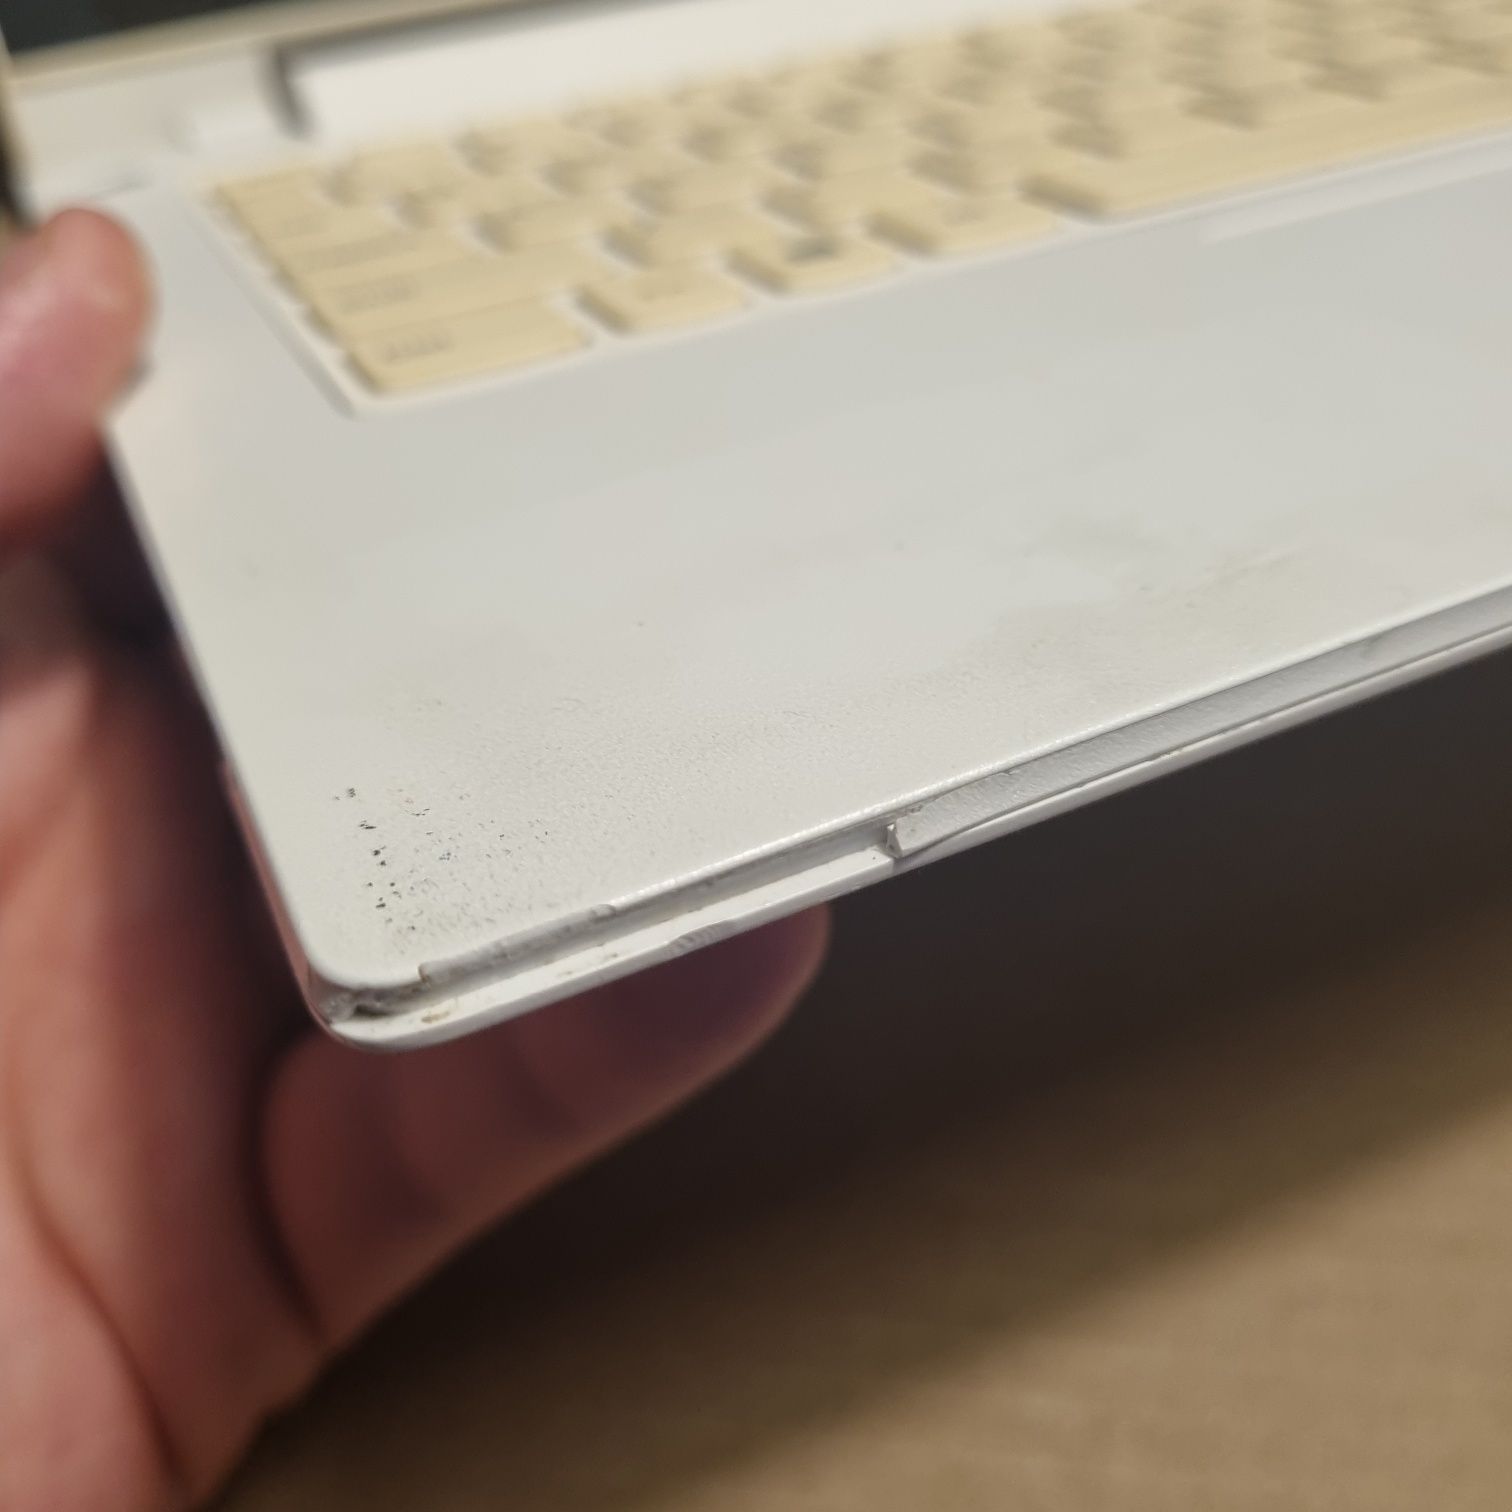 Lenovo IdeaPad S210 touch, laptop z dotykowym ekranem